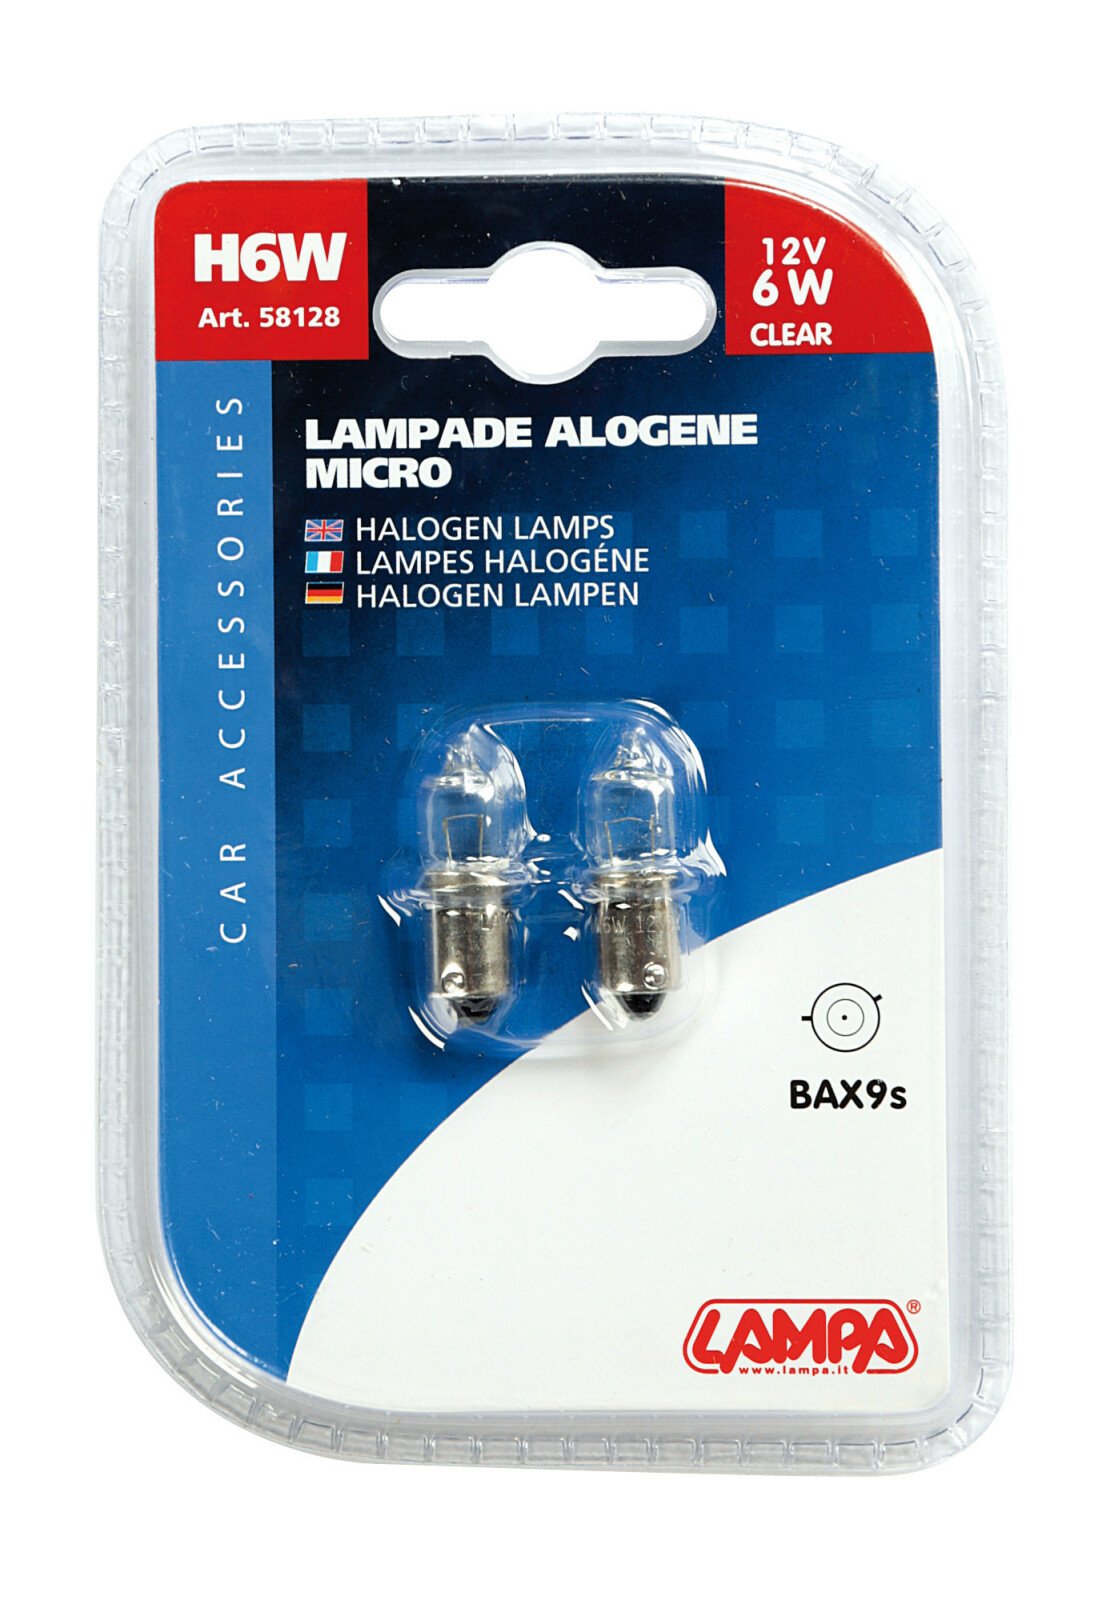 12V -H6W - 6W Halogen micro lamp BAX9s 2pcs Lampa thumb